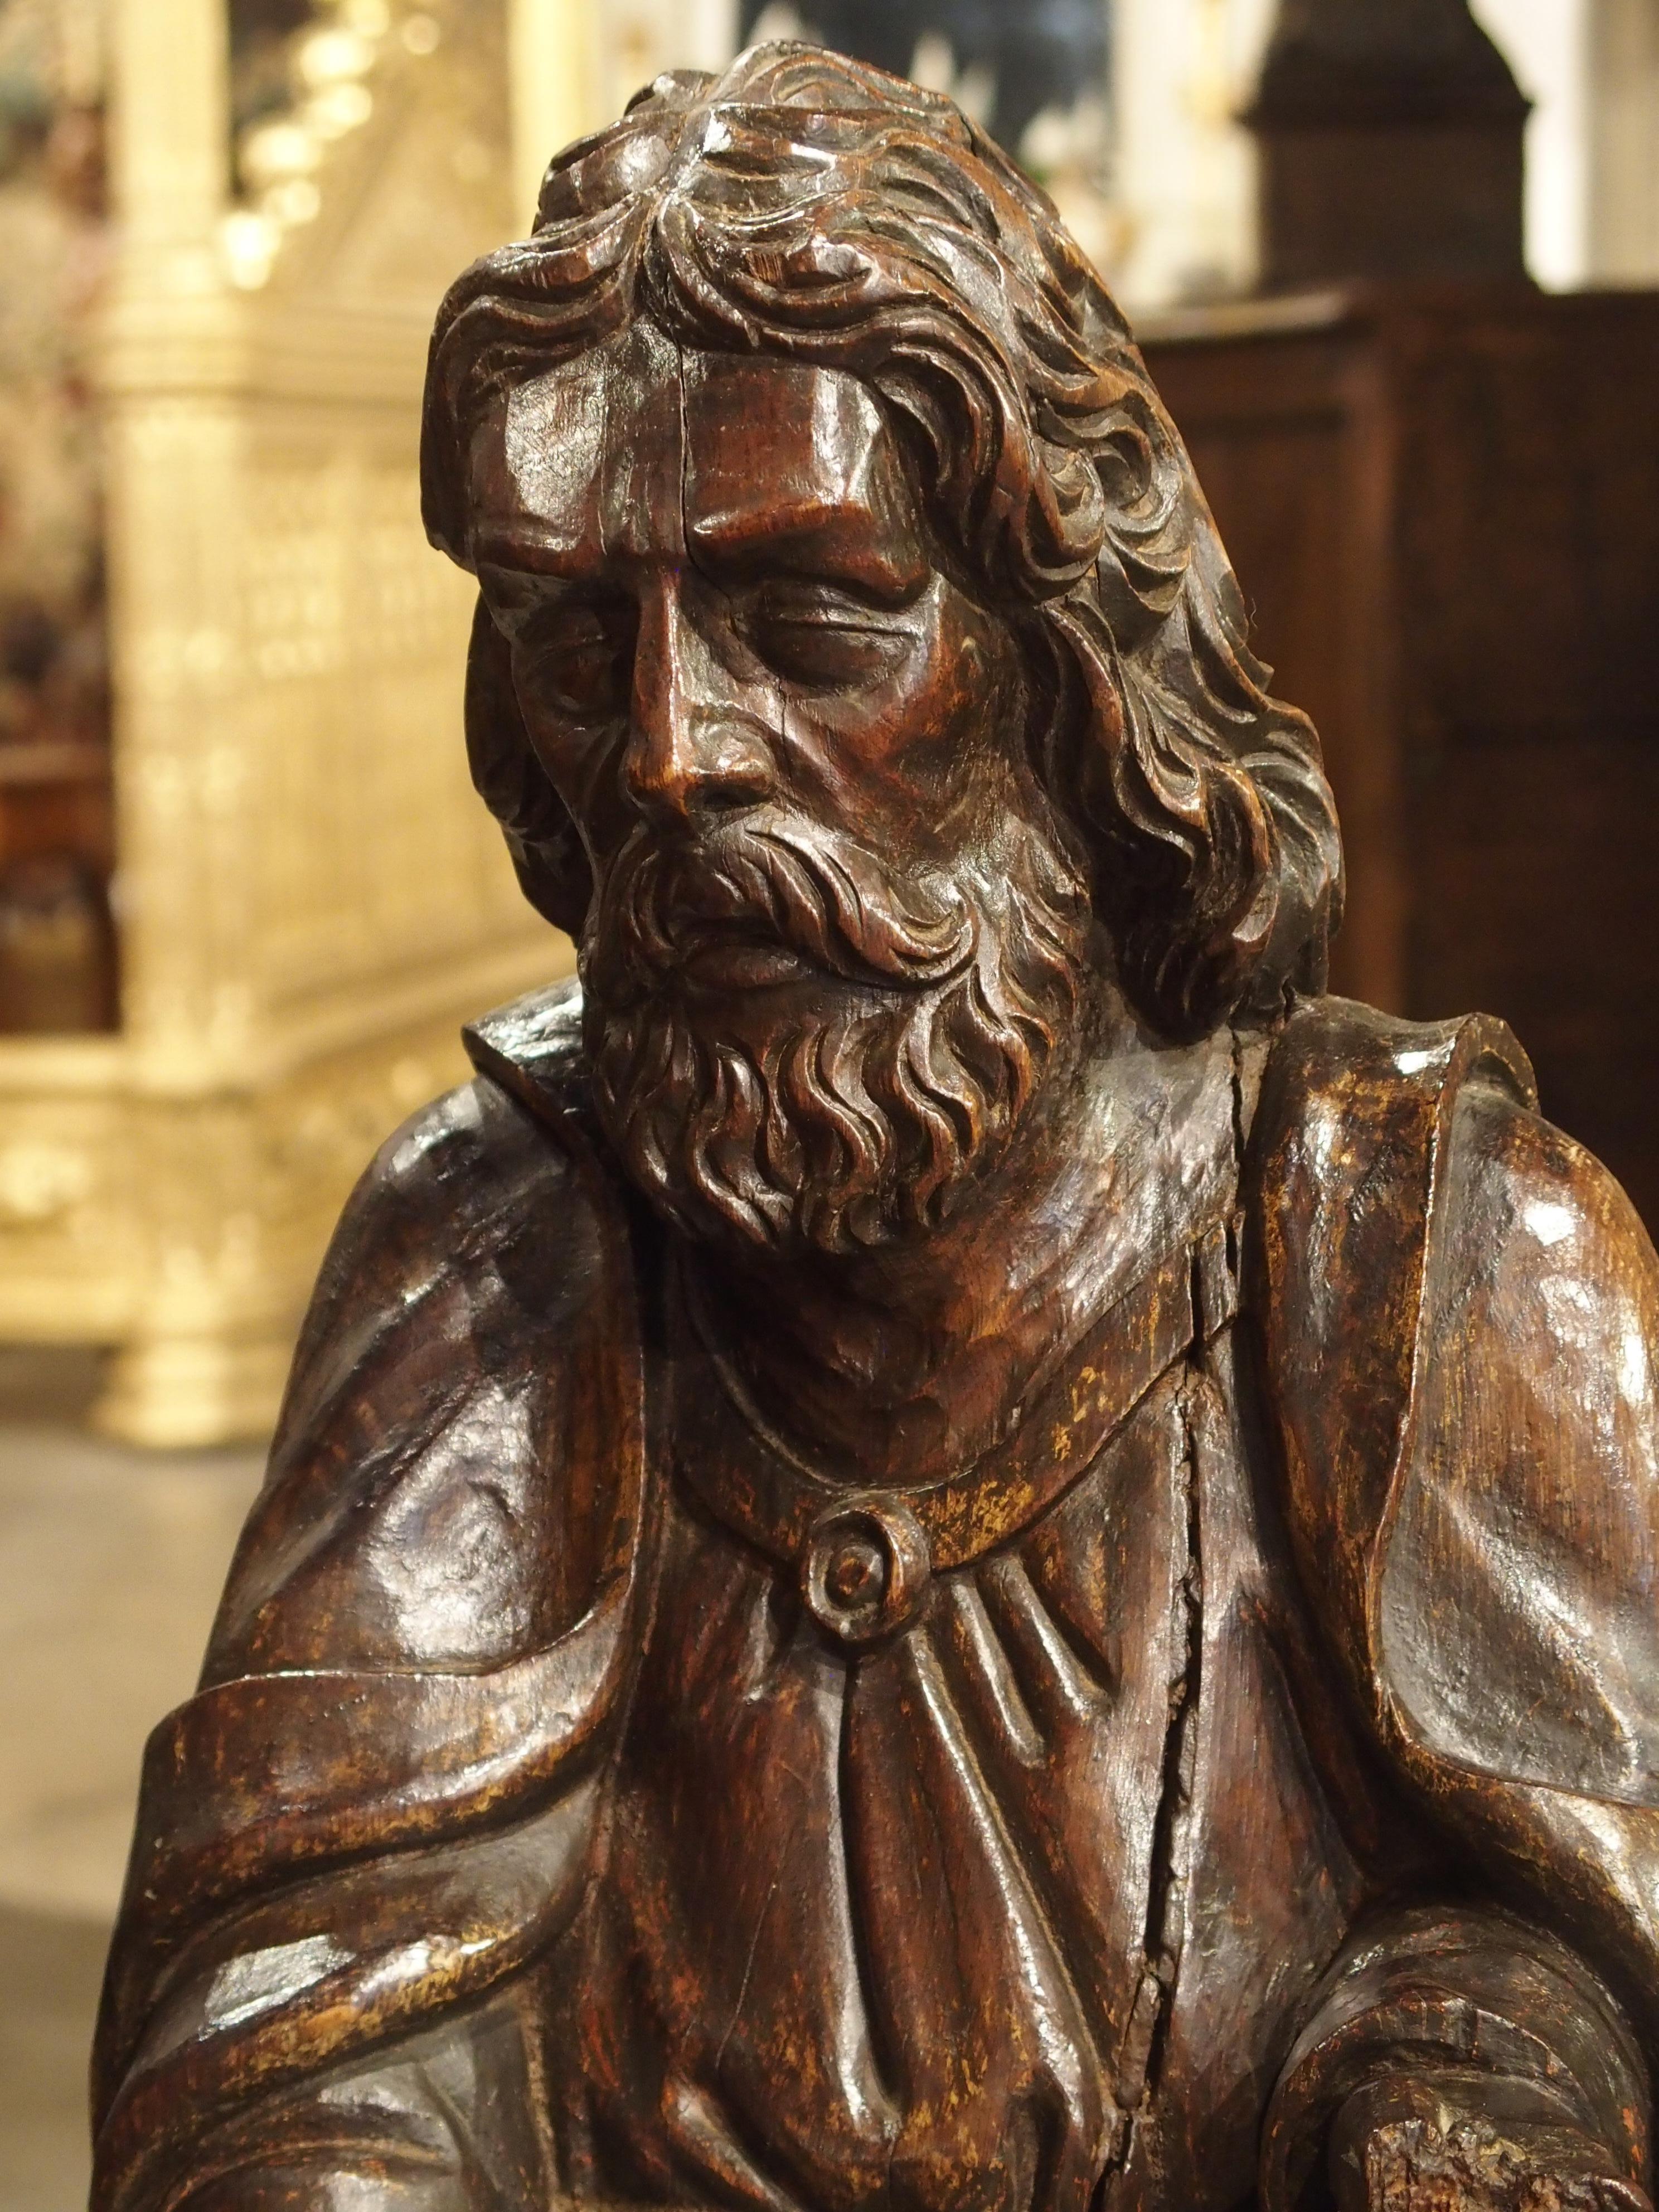 Cette grande statue française de Saint-Barthélemy a été sculptée à la main dans du chêne dans les années 1700. Cette représentation de Saint-Barthélemy n'est pas souvent vue dans l'art, à l'exception de l'une des interprétations les plus connues,